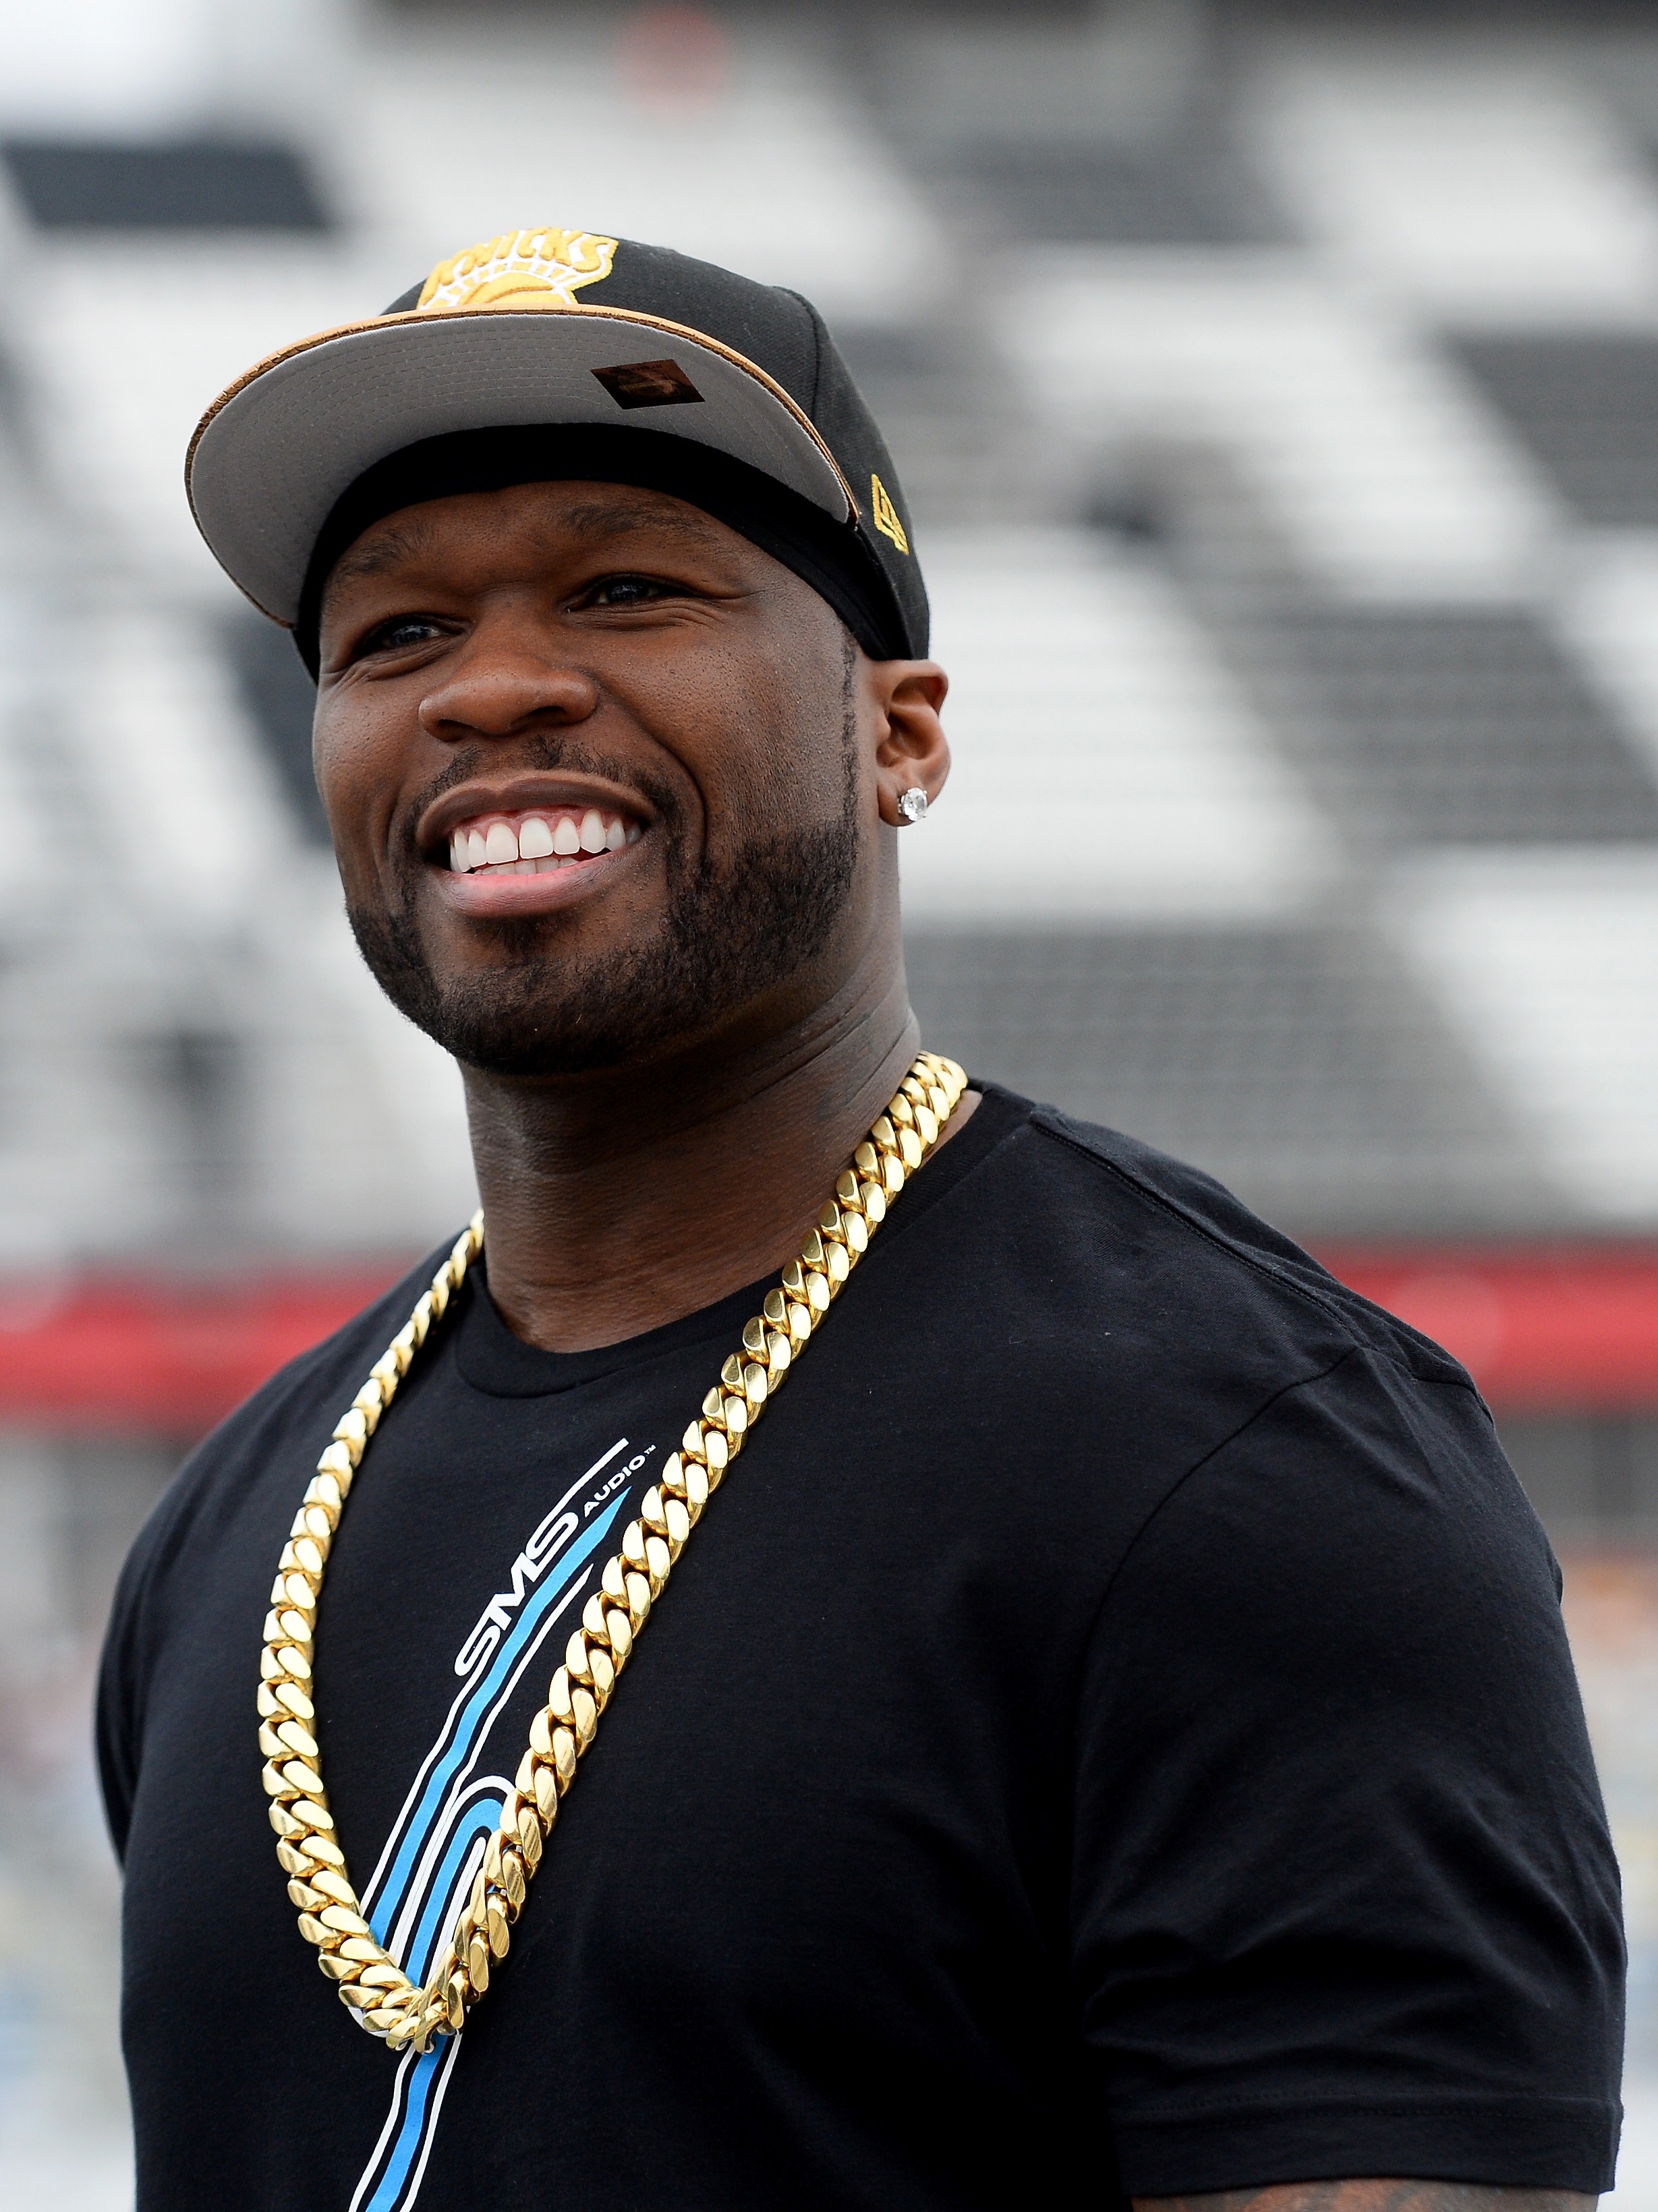 Ixii! Com dívidas de até US$ 50 mi, rapper 50 Cent declara falência ...